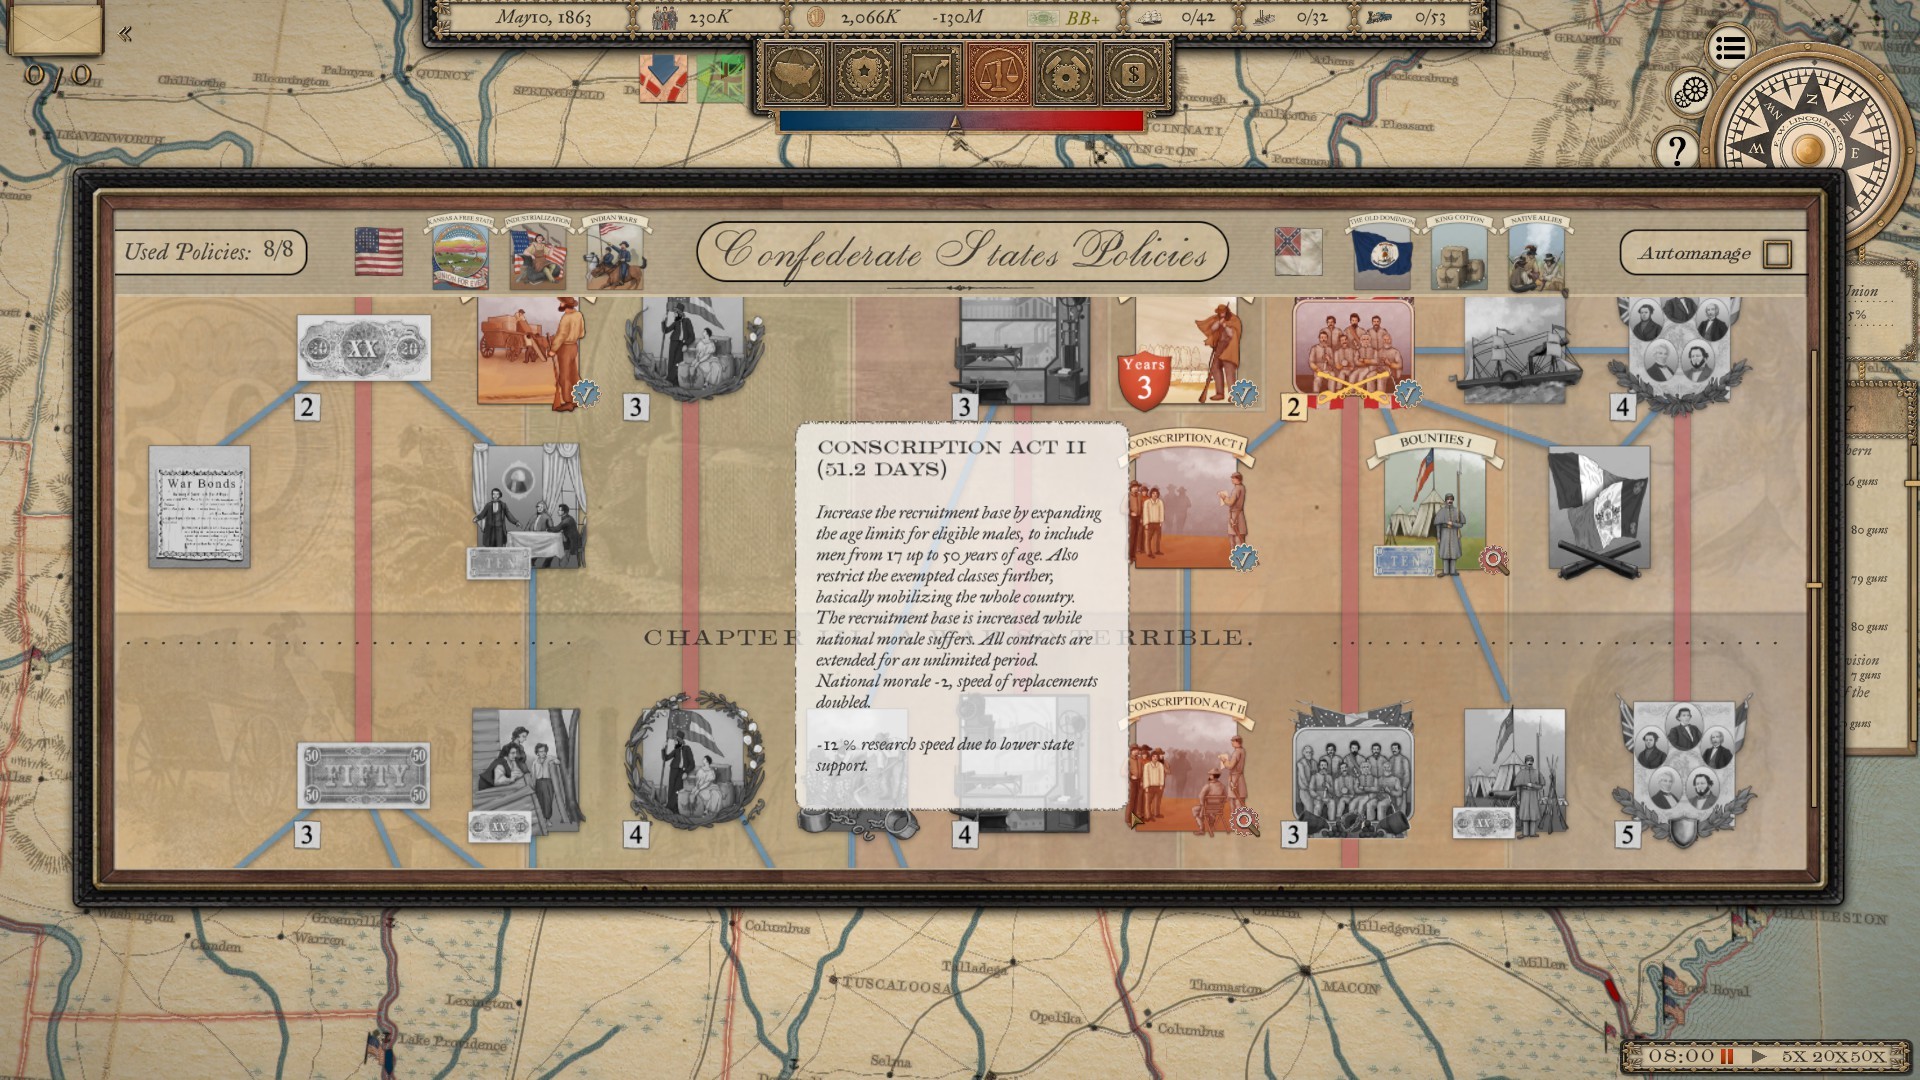 Grand Tactician: The Civil War (1861-1865) - screenshot 4